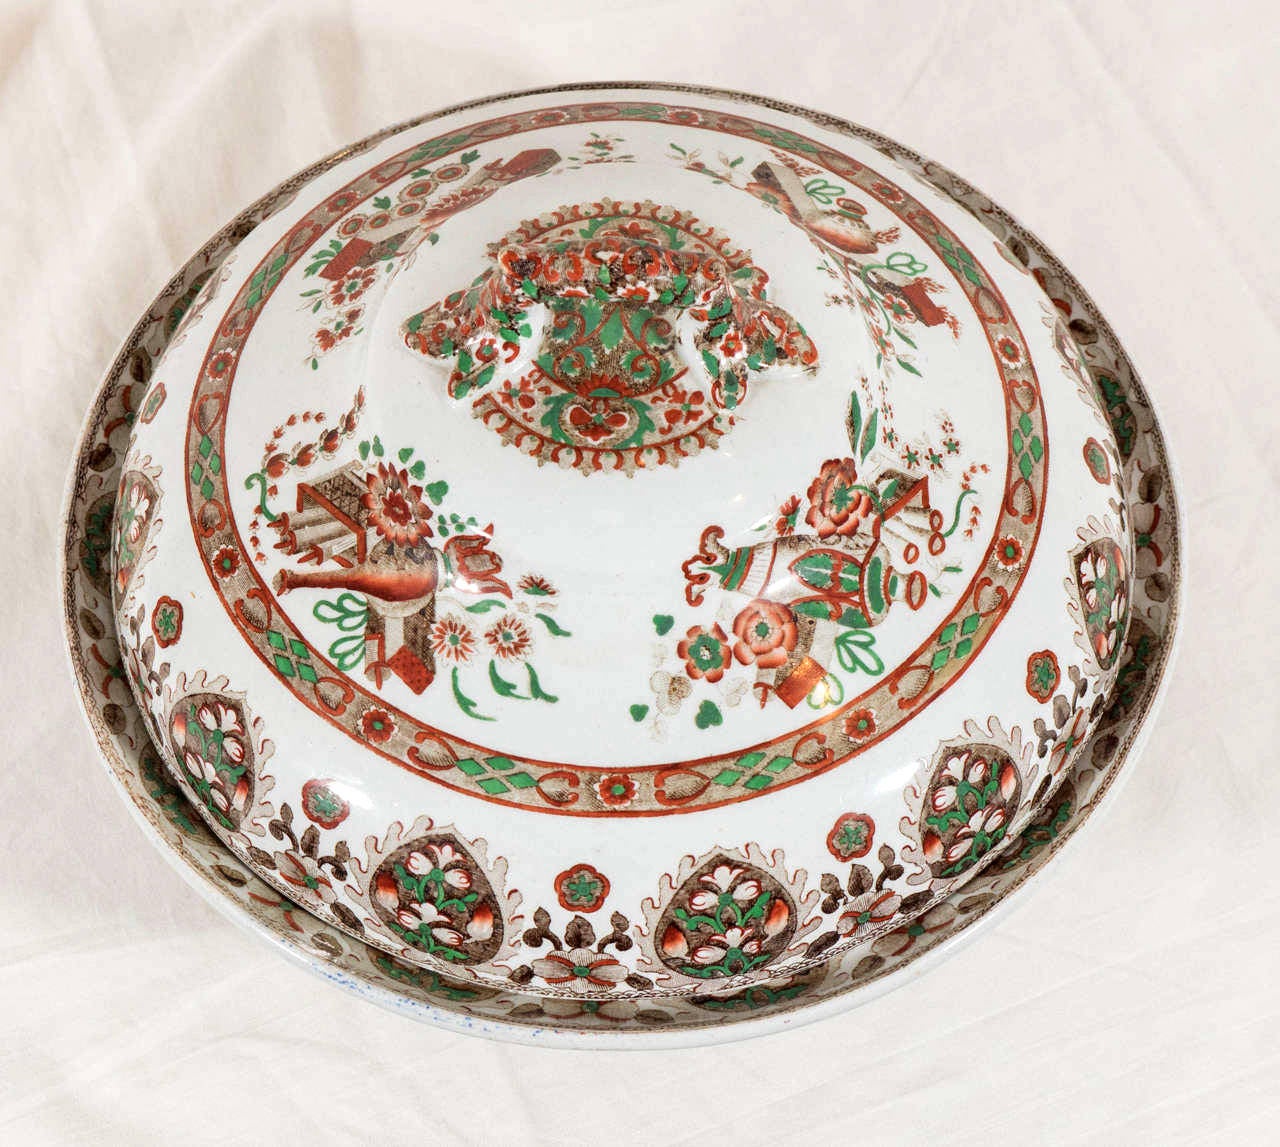 Vernissé Paire de soupières en porcelaine anciennes anglaises fabriquées vers 1840